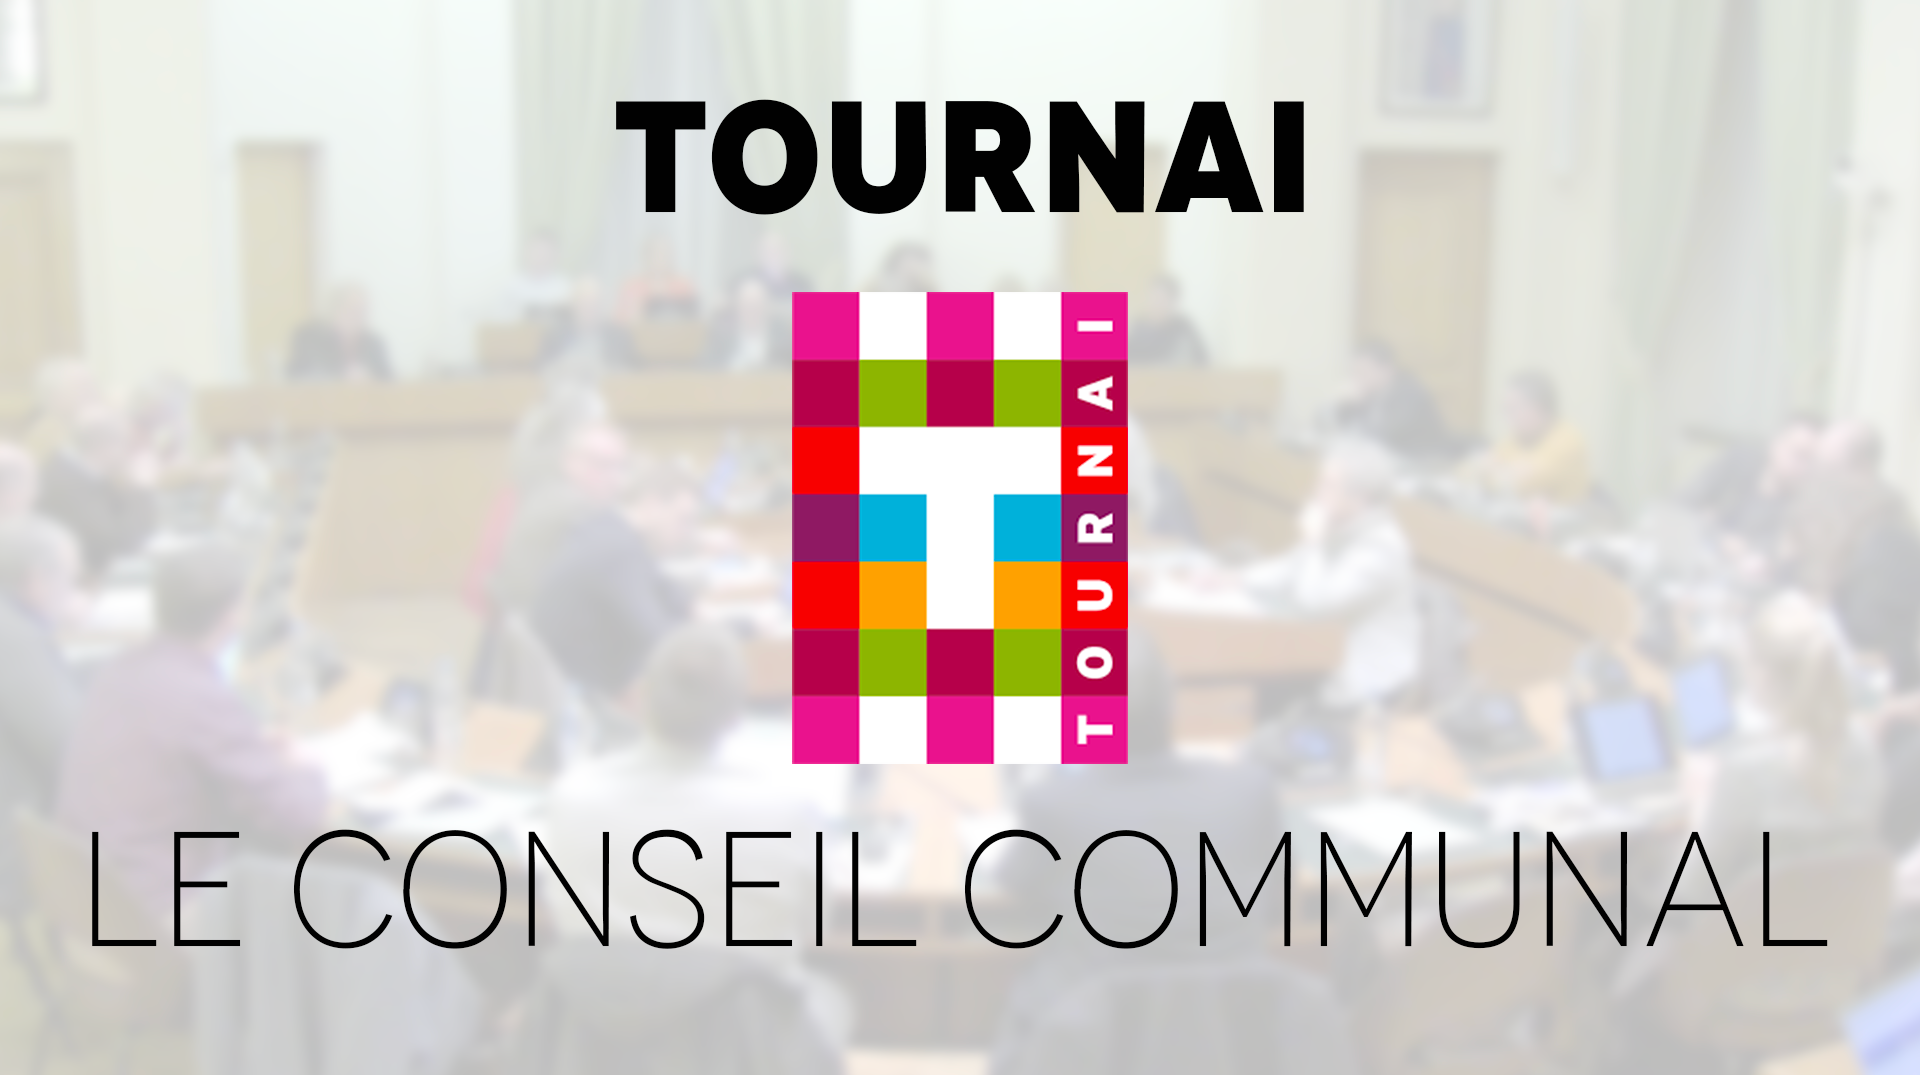 Le conseil communal de Tournai